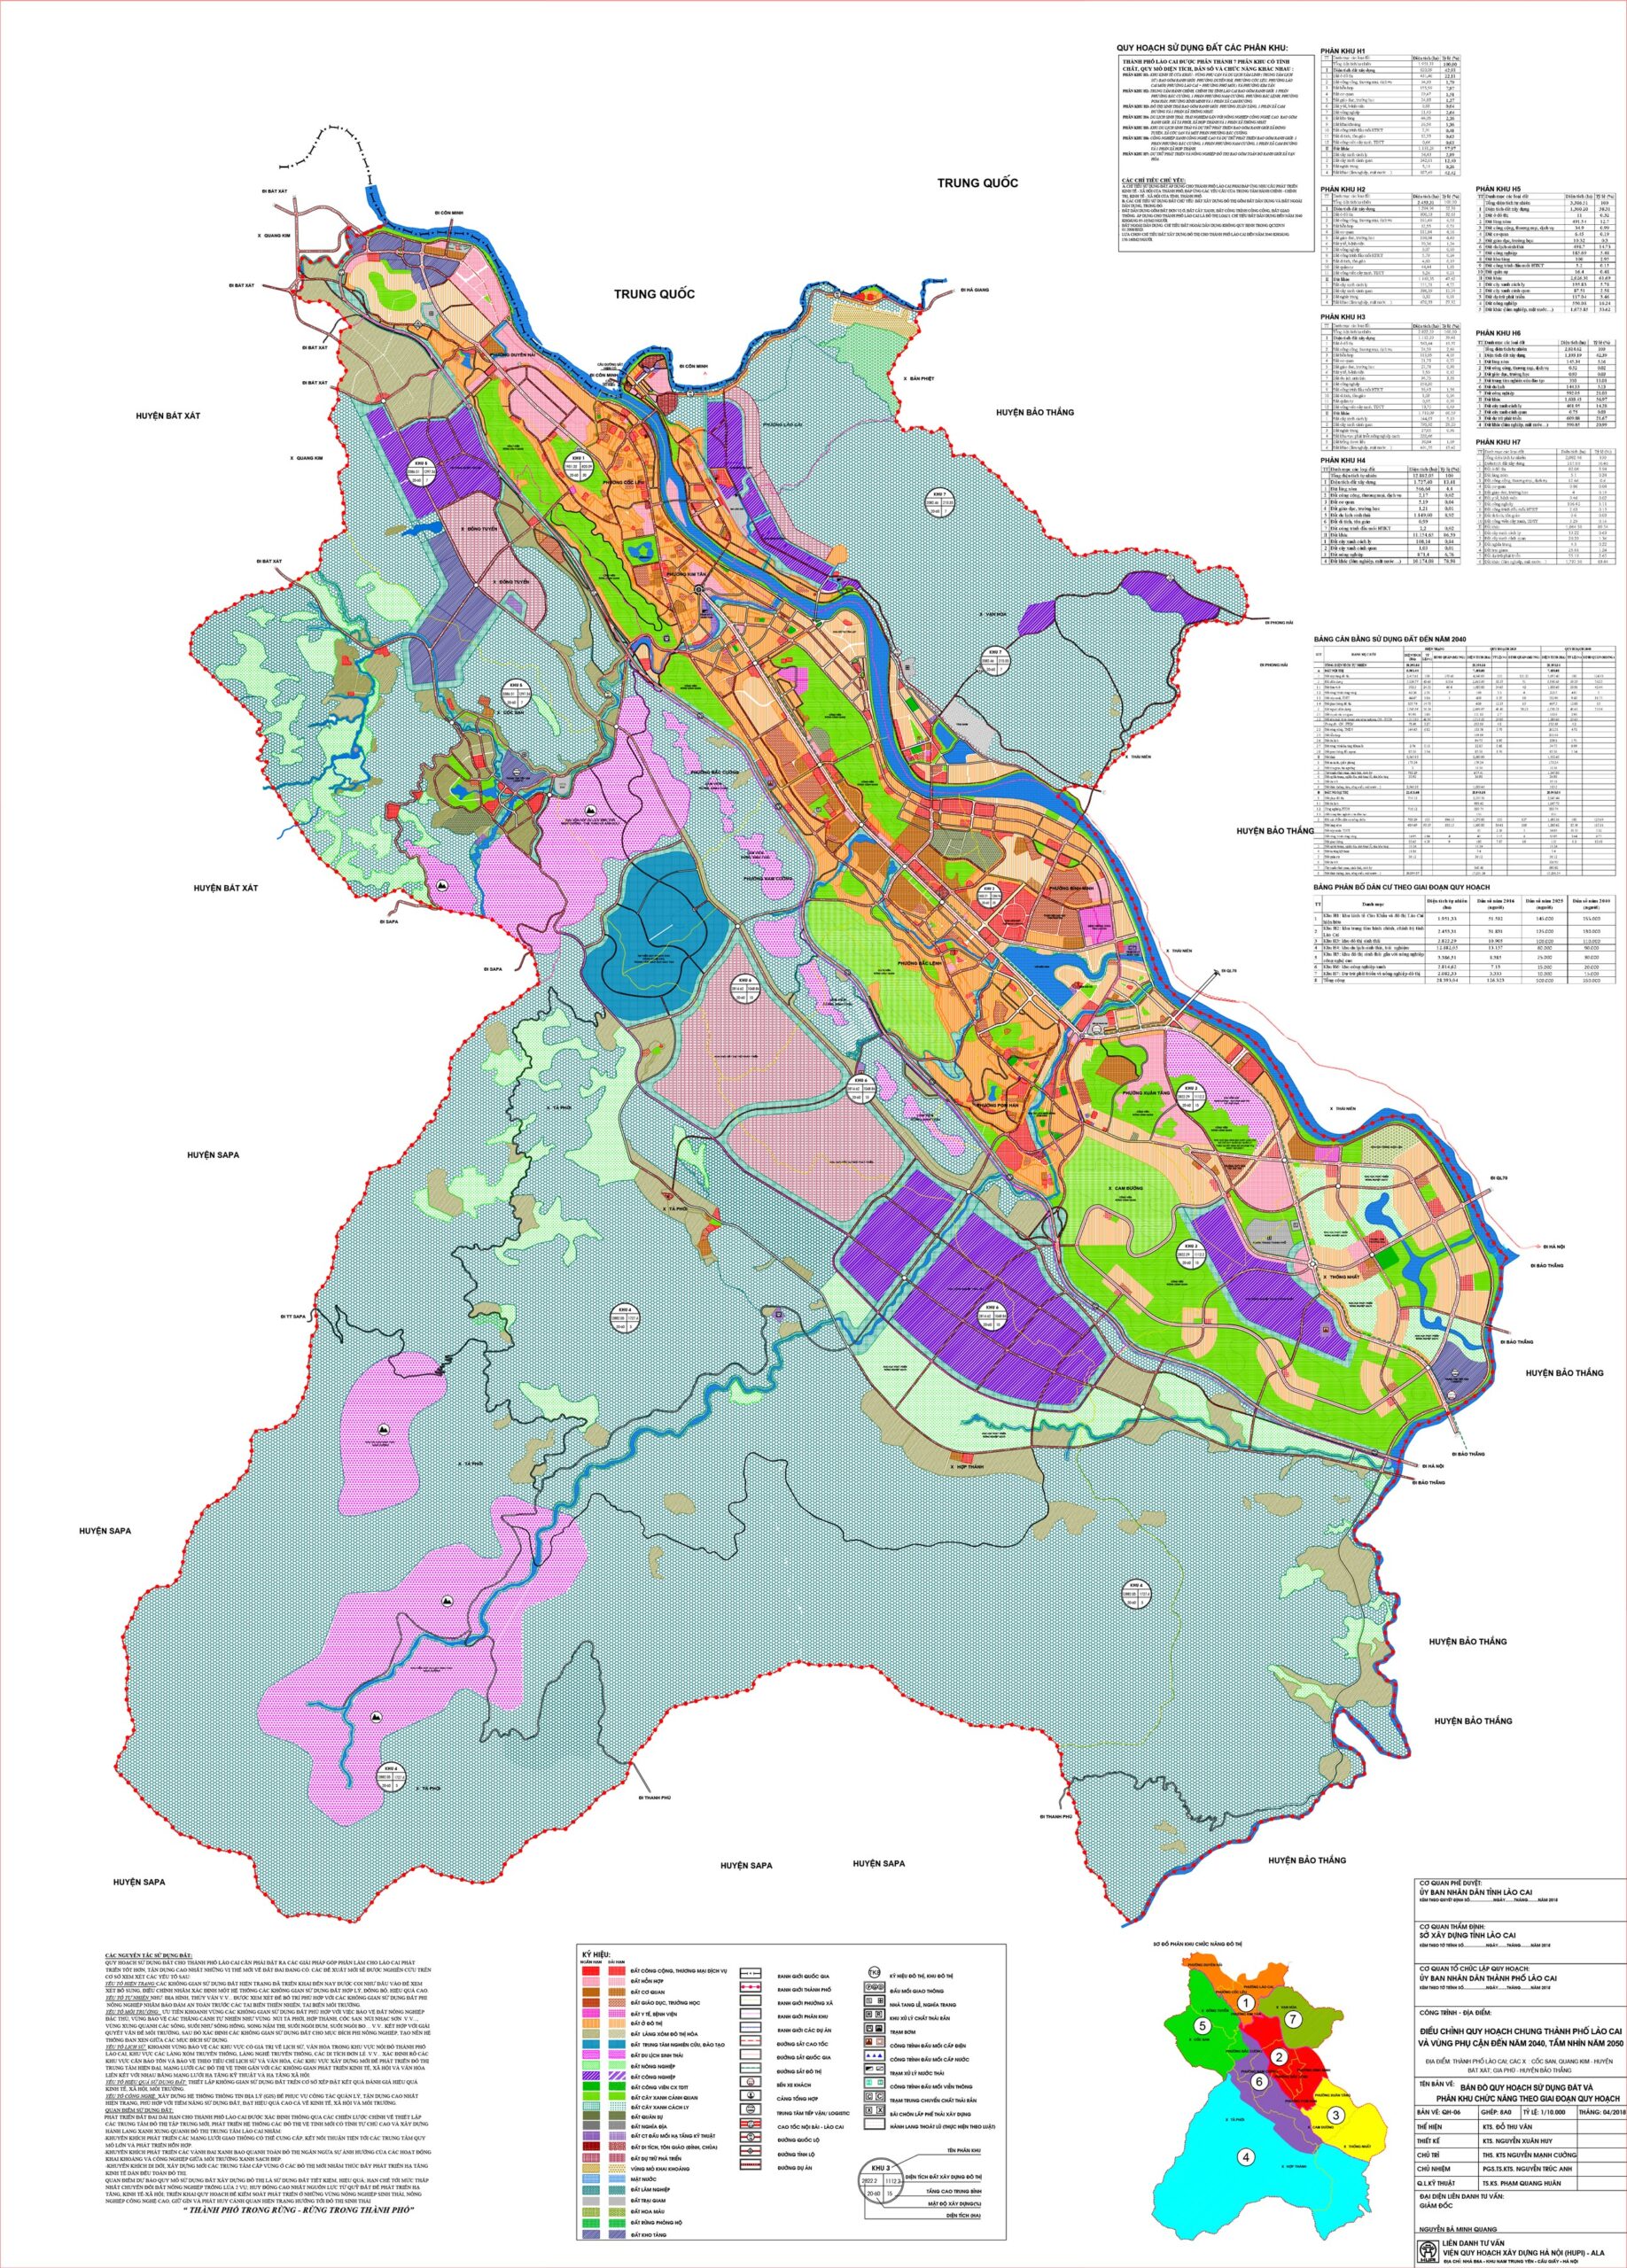 Đến với Thành phố Lào Cai, hãy đừng quên xem bản đồ thành phố mới nhất năm 2024! Bản đồ sẽ giúp bạn dễ dàng tìm thấy các địa điểm du lịch và các cơ sở hạ tầng cập nhật của thành phố. Hãy sẵn sàng khám phá vẻ đẹp và sinh khí của Lào Cai.